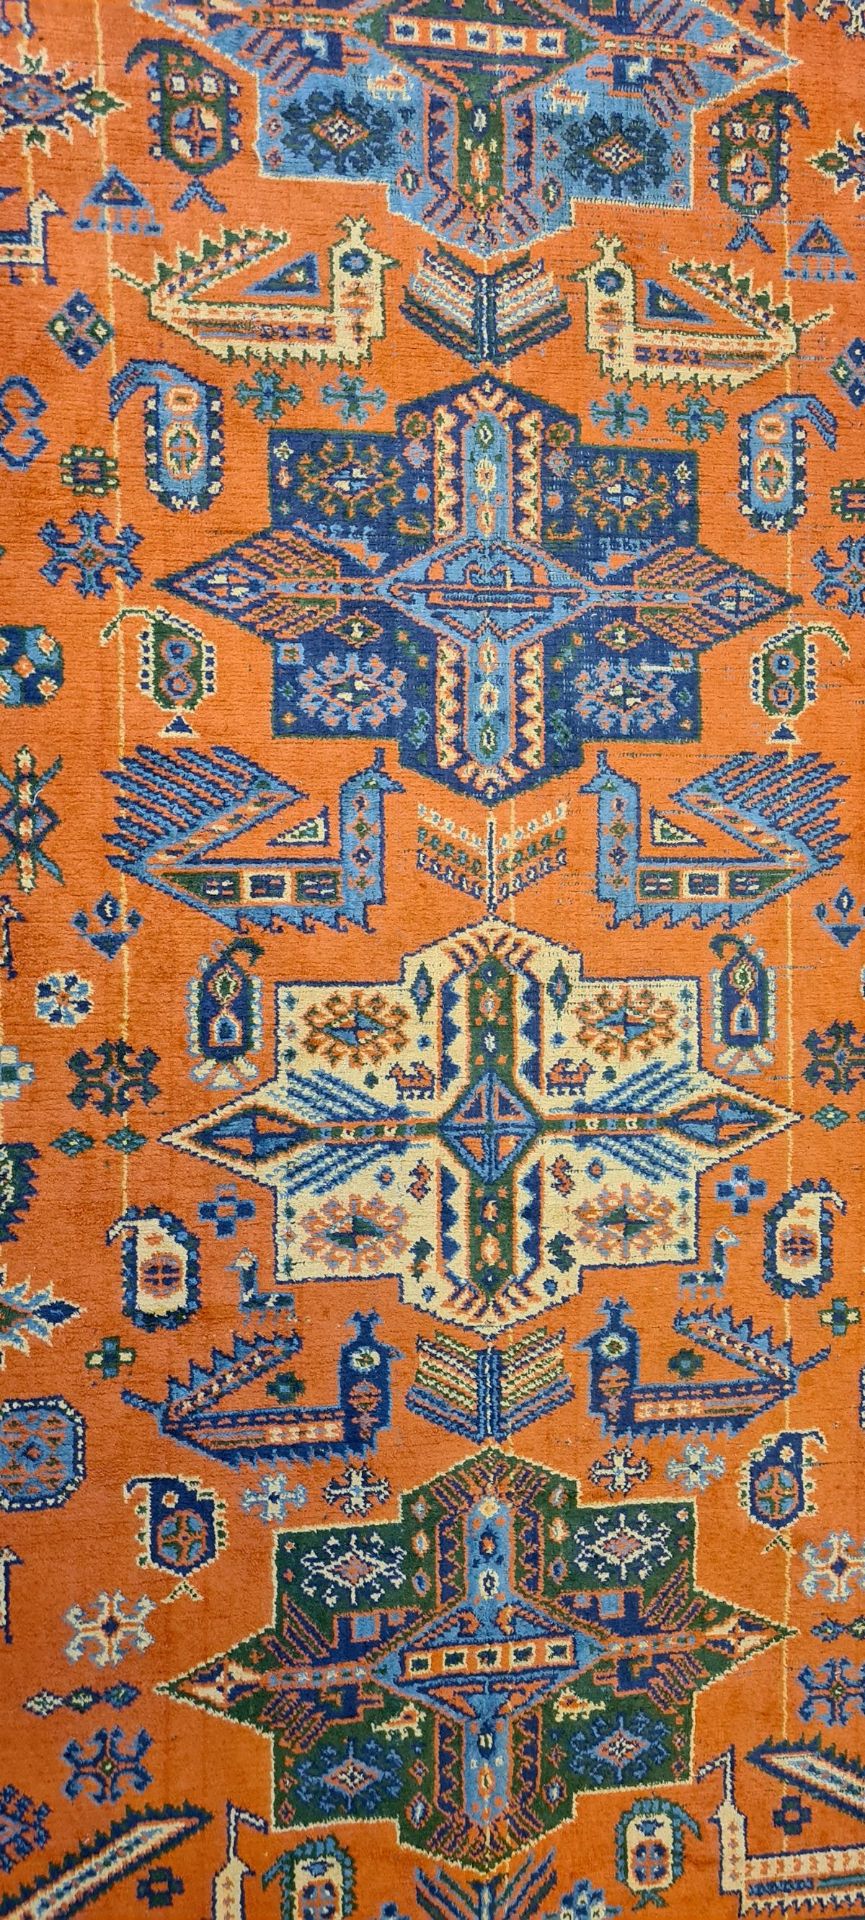 Teppich, orange/blau, ca. 245 x 180 cm - Bild 2 aus 5